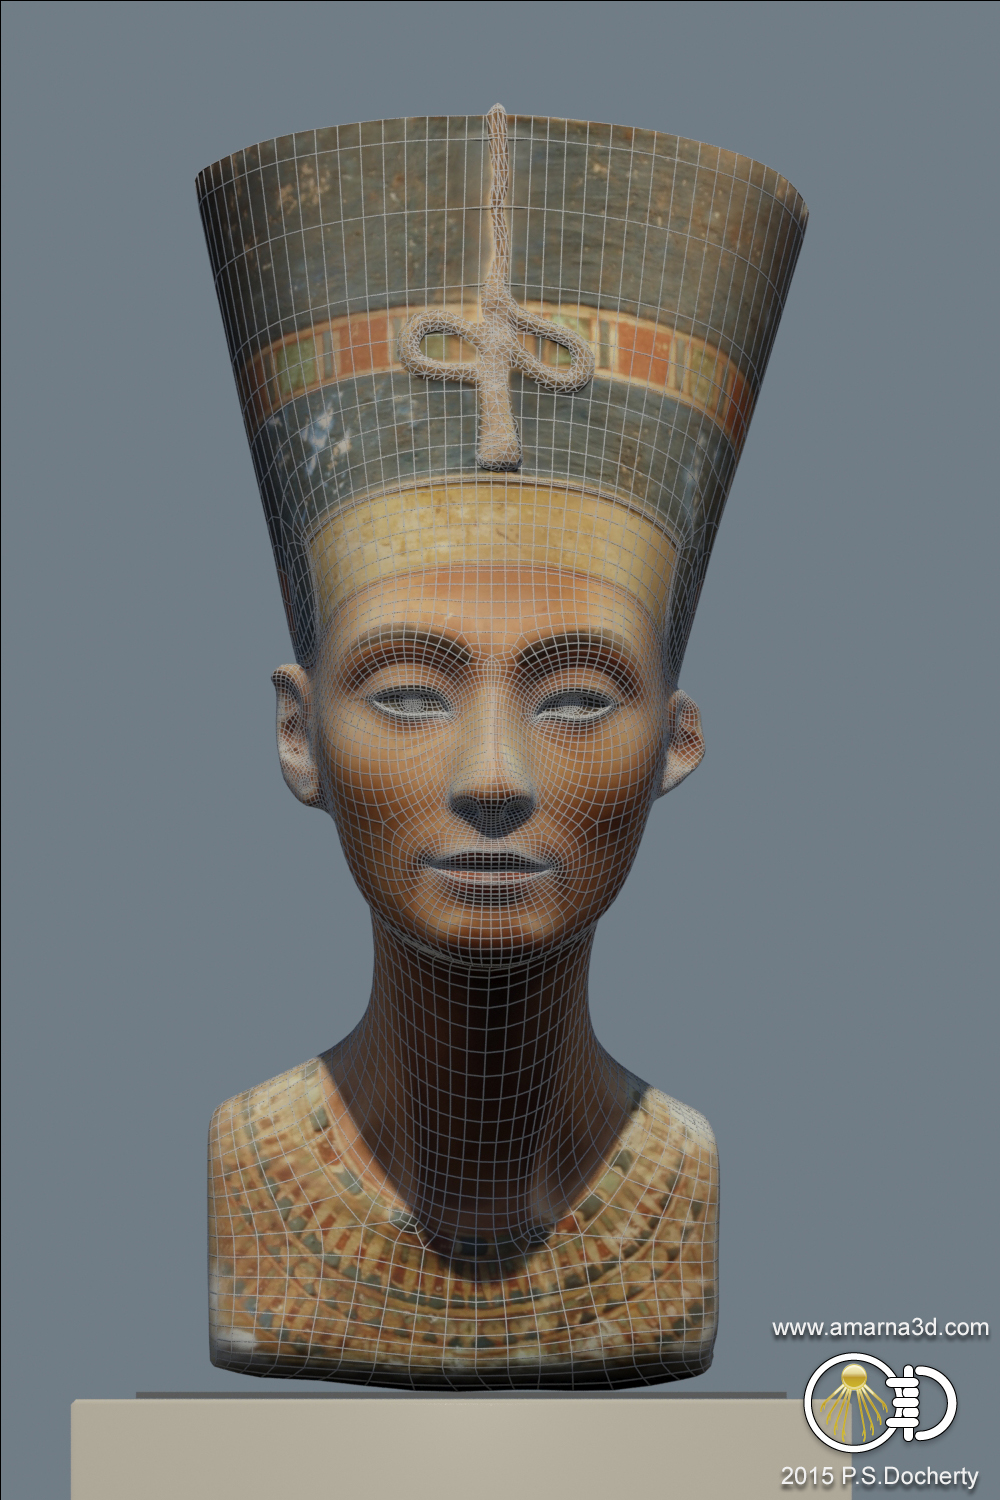 Amarna 3D - Nefertiti Bust 3D Reconstruction